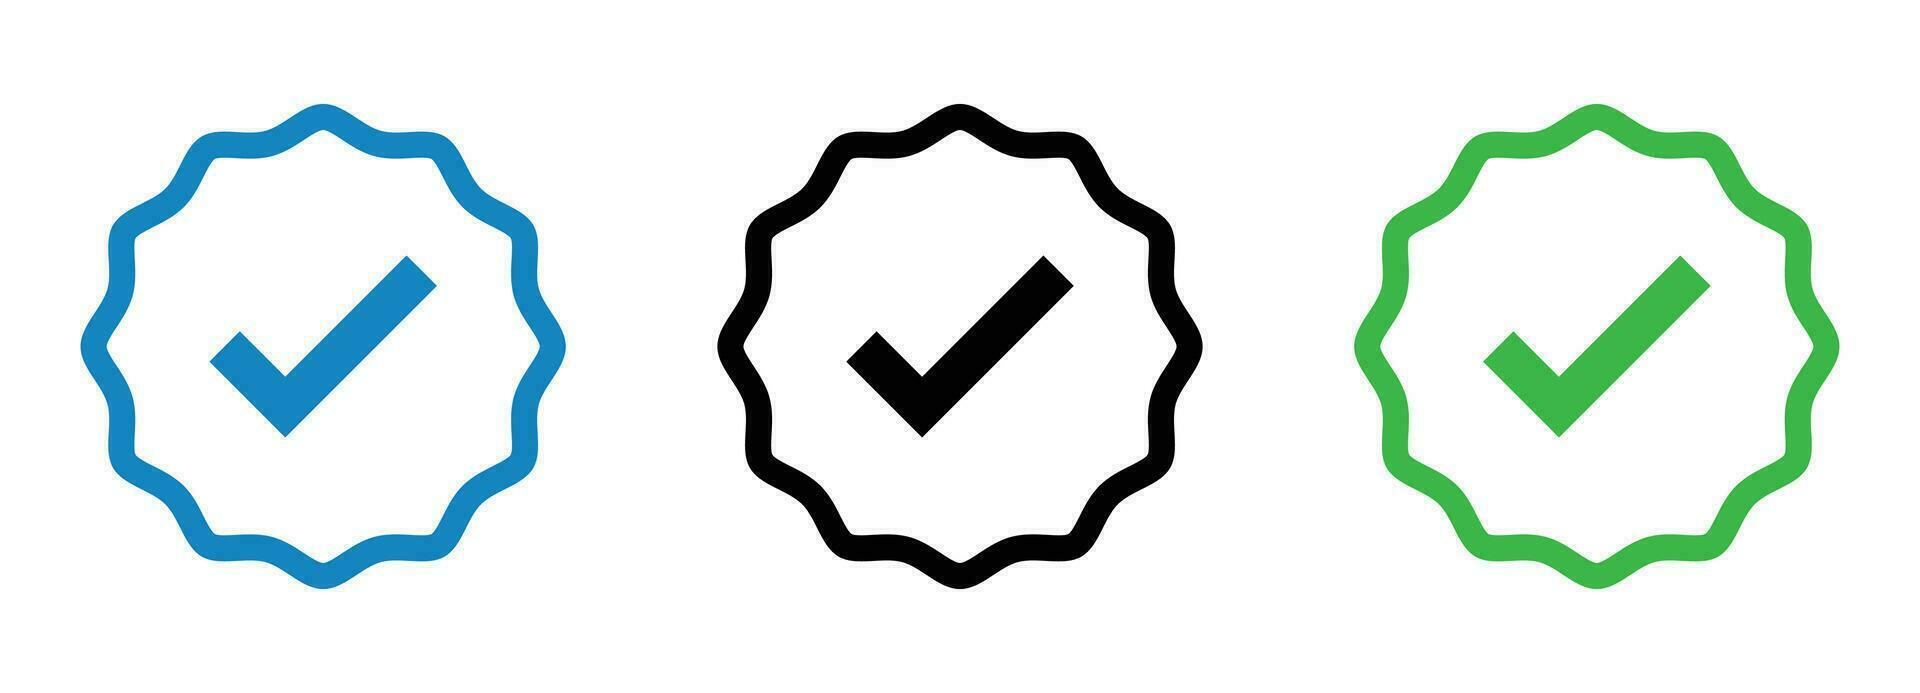 vérifié social médias badge Icônes ensemble - symboles pour authenticité et confiance vecteur